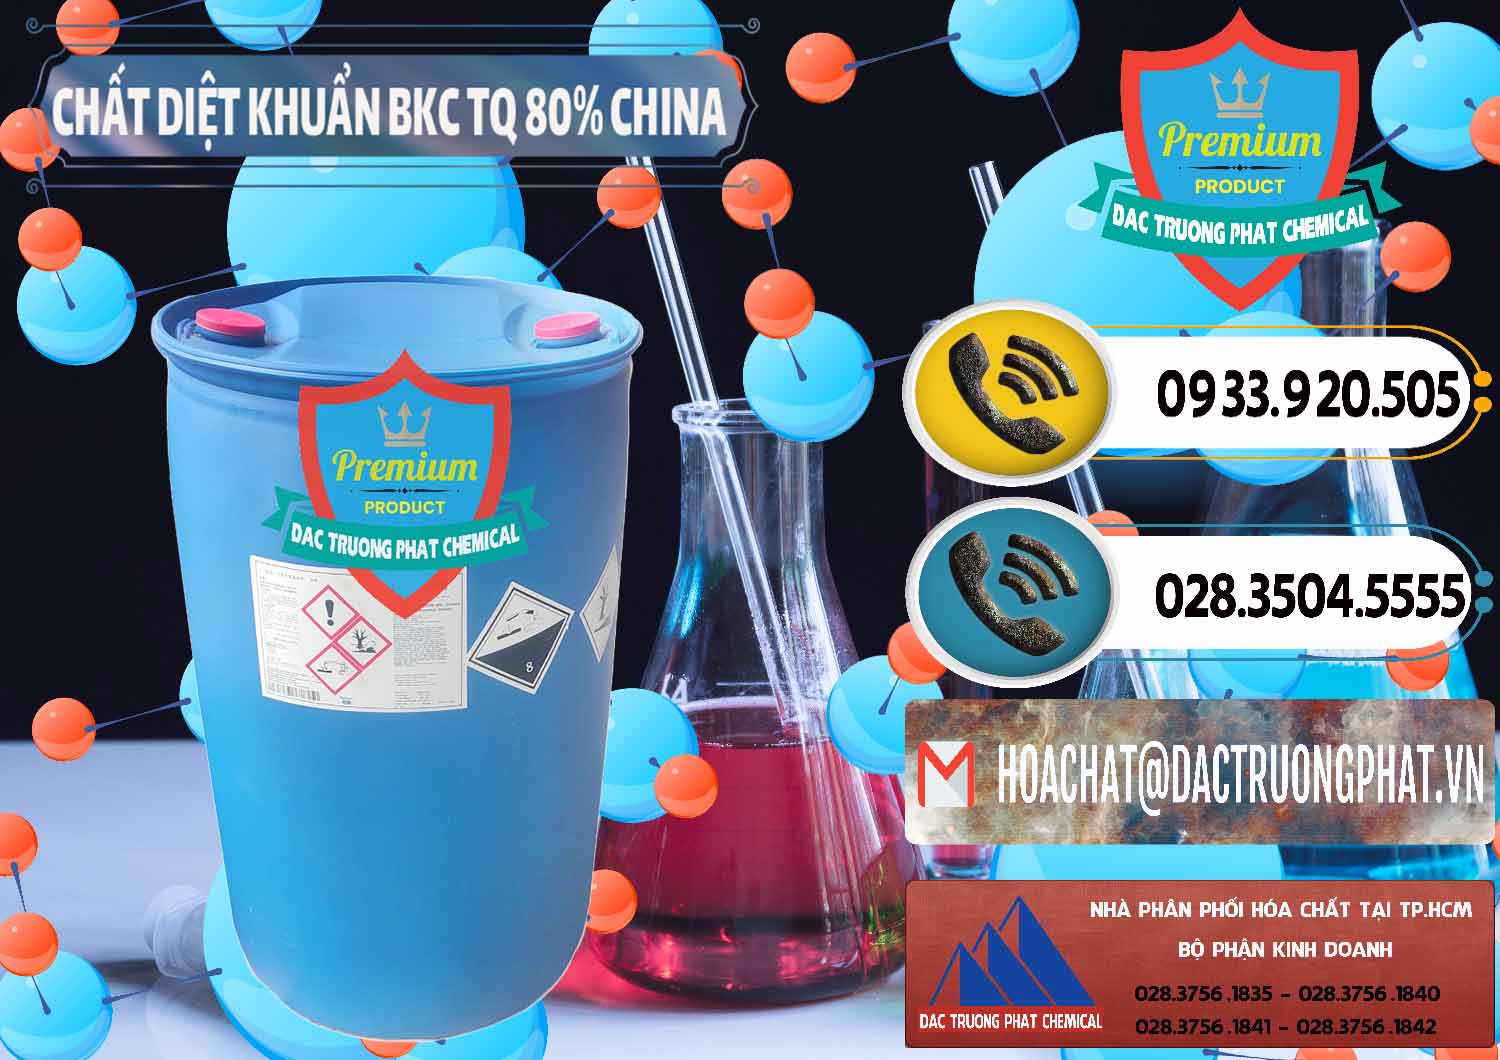 Đơn vị chuyên kinh doanh & bán BKC - Benzalkonium Chloride 80% Trung Quốc China - 0310 - Nơi bán ( phân phối ) hóa chất tại TP.HCM - hoachatdetnhuom.vn